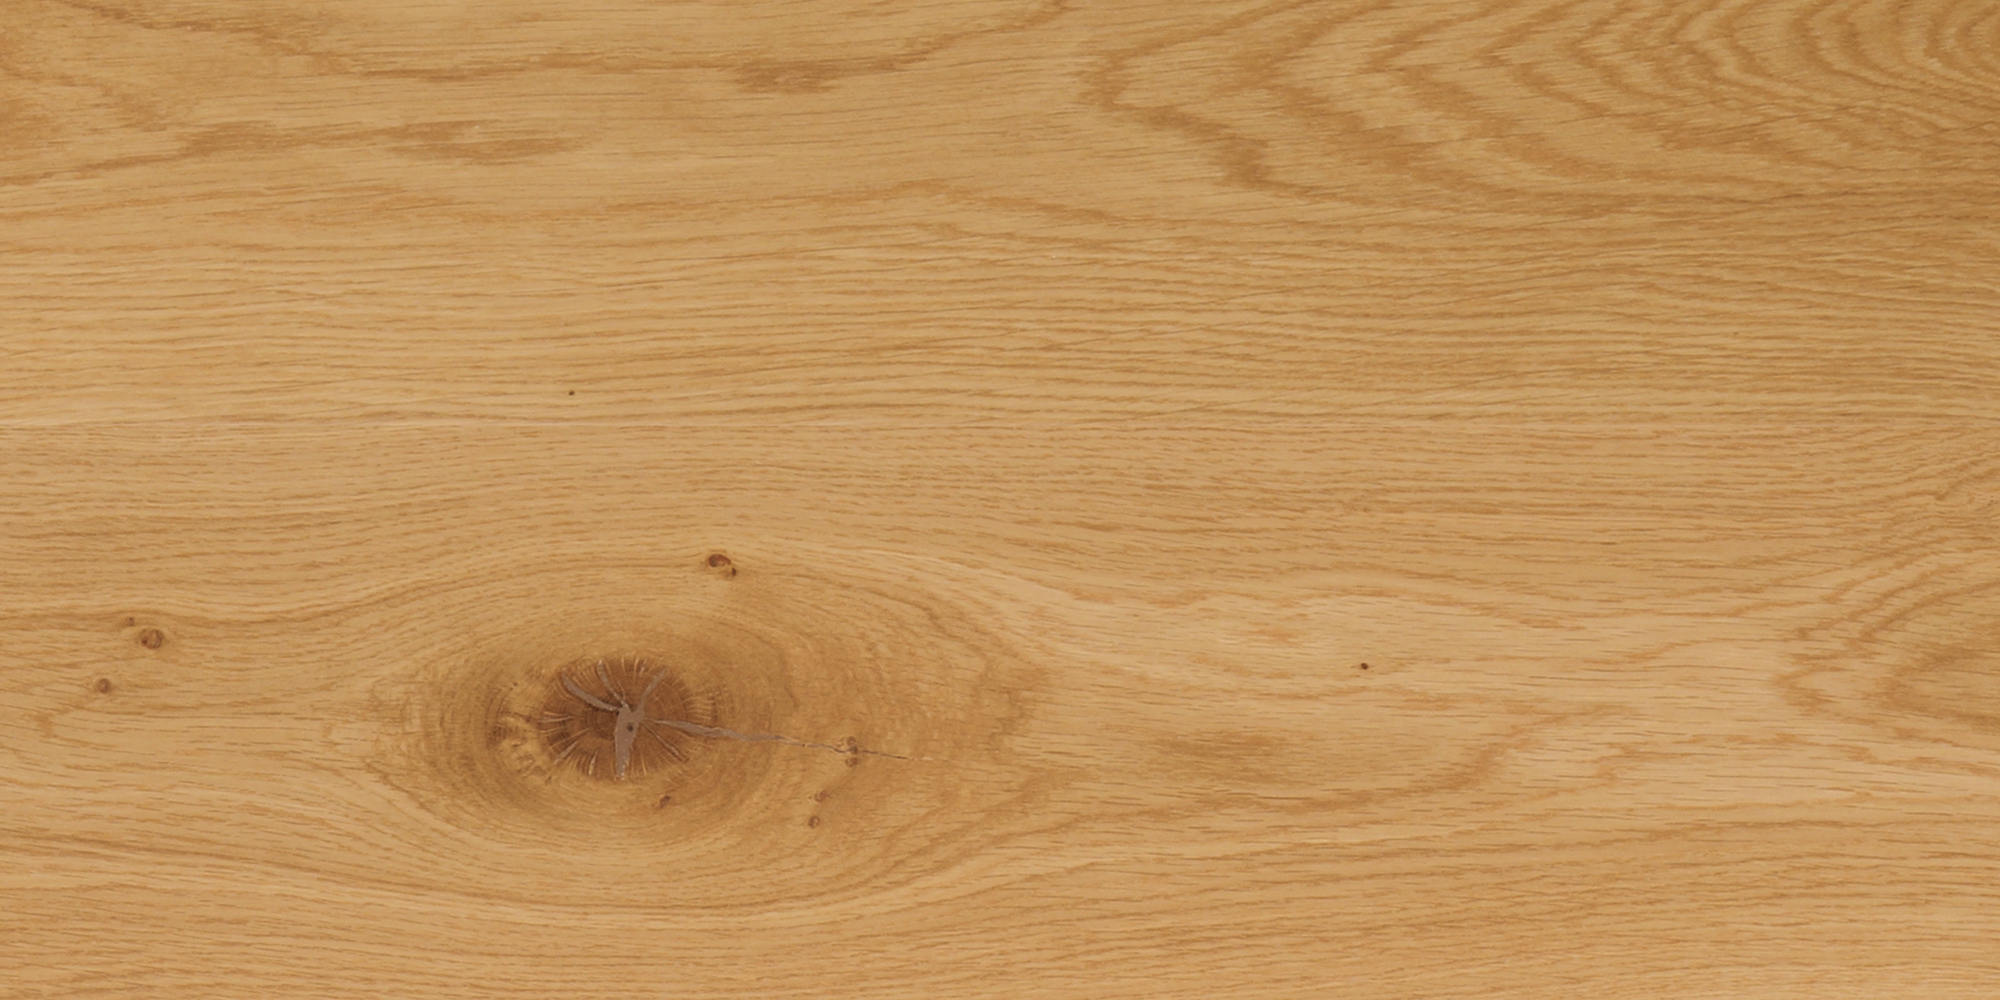 Wood Flooring Grades Explained, Hardwood Flooring Grades Explained